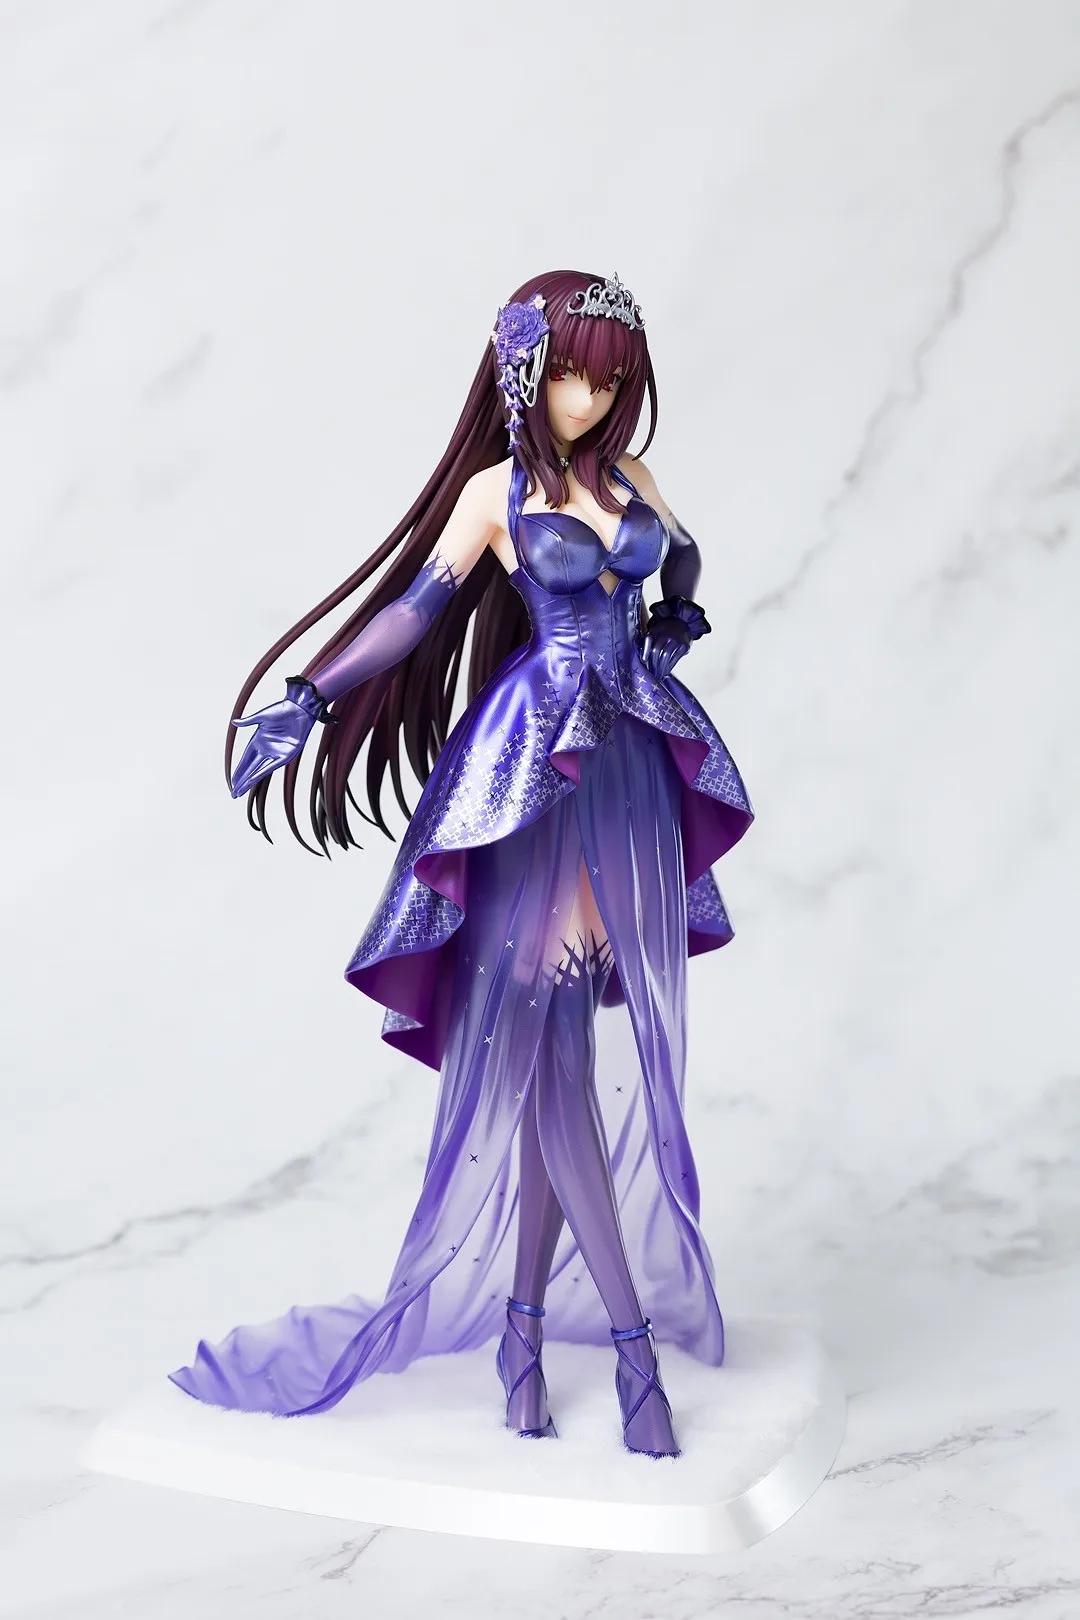 

Аниме Fate Grand Order Lancer Scathach Heroic Spirit официальное платье девочка Фигурка из ПВХ аниме модель игрушки для взрослых коллекционные куклы Подарки